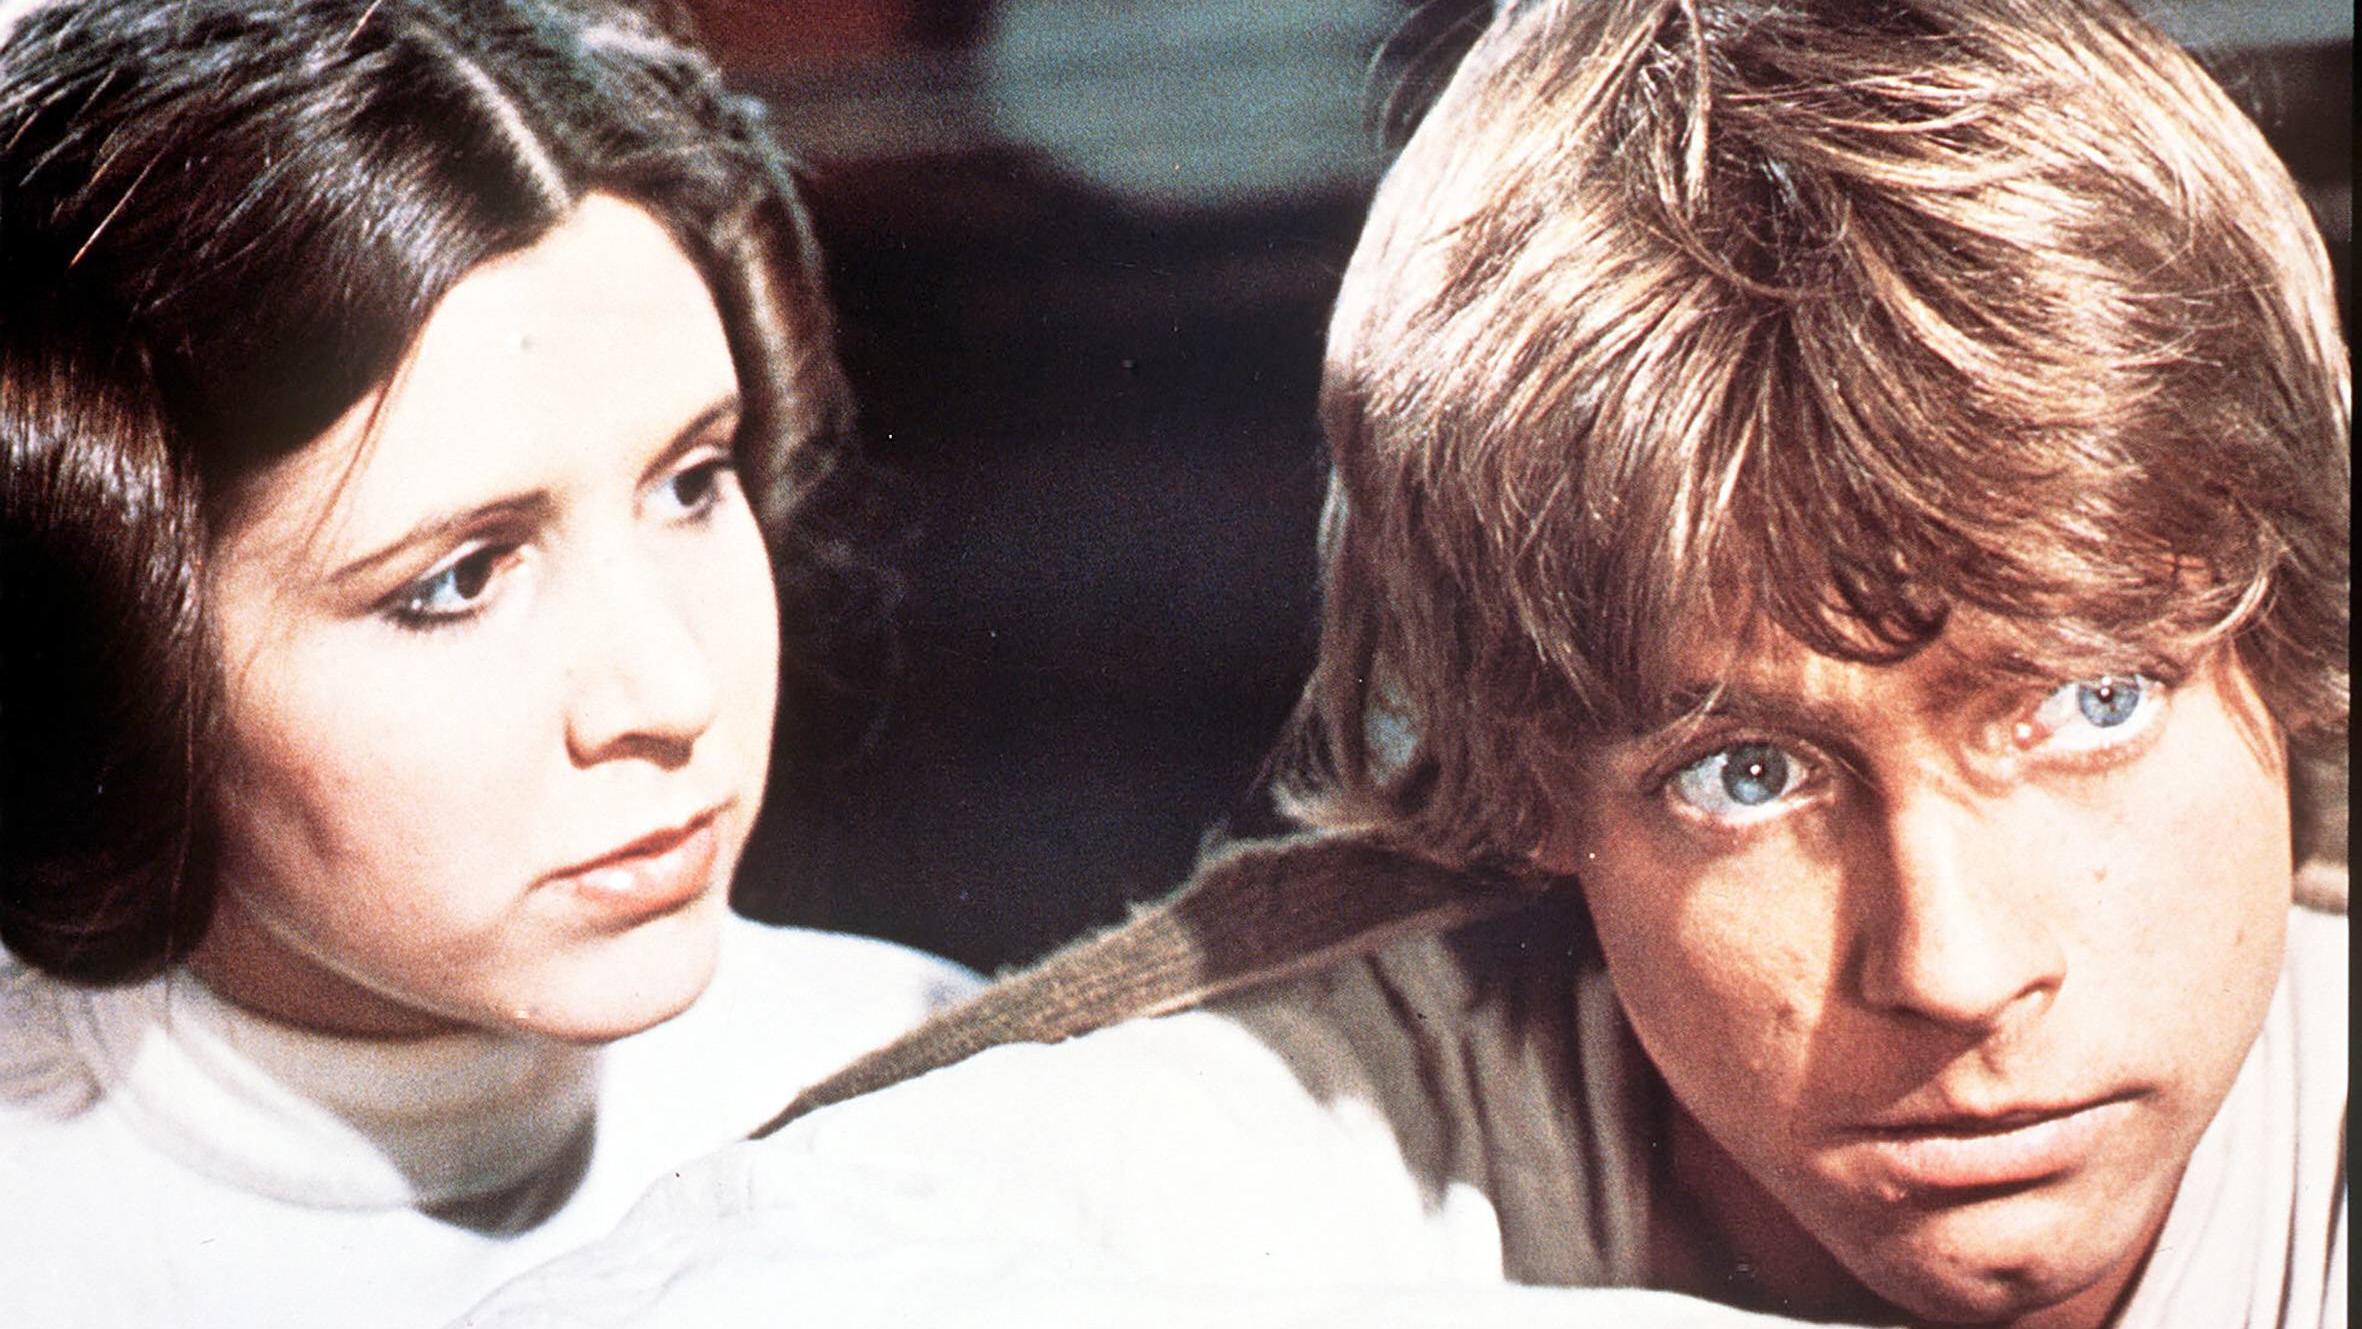 Leia und Luke in der ersten Trilogie der „Star Wars“-Saga